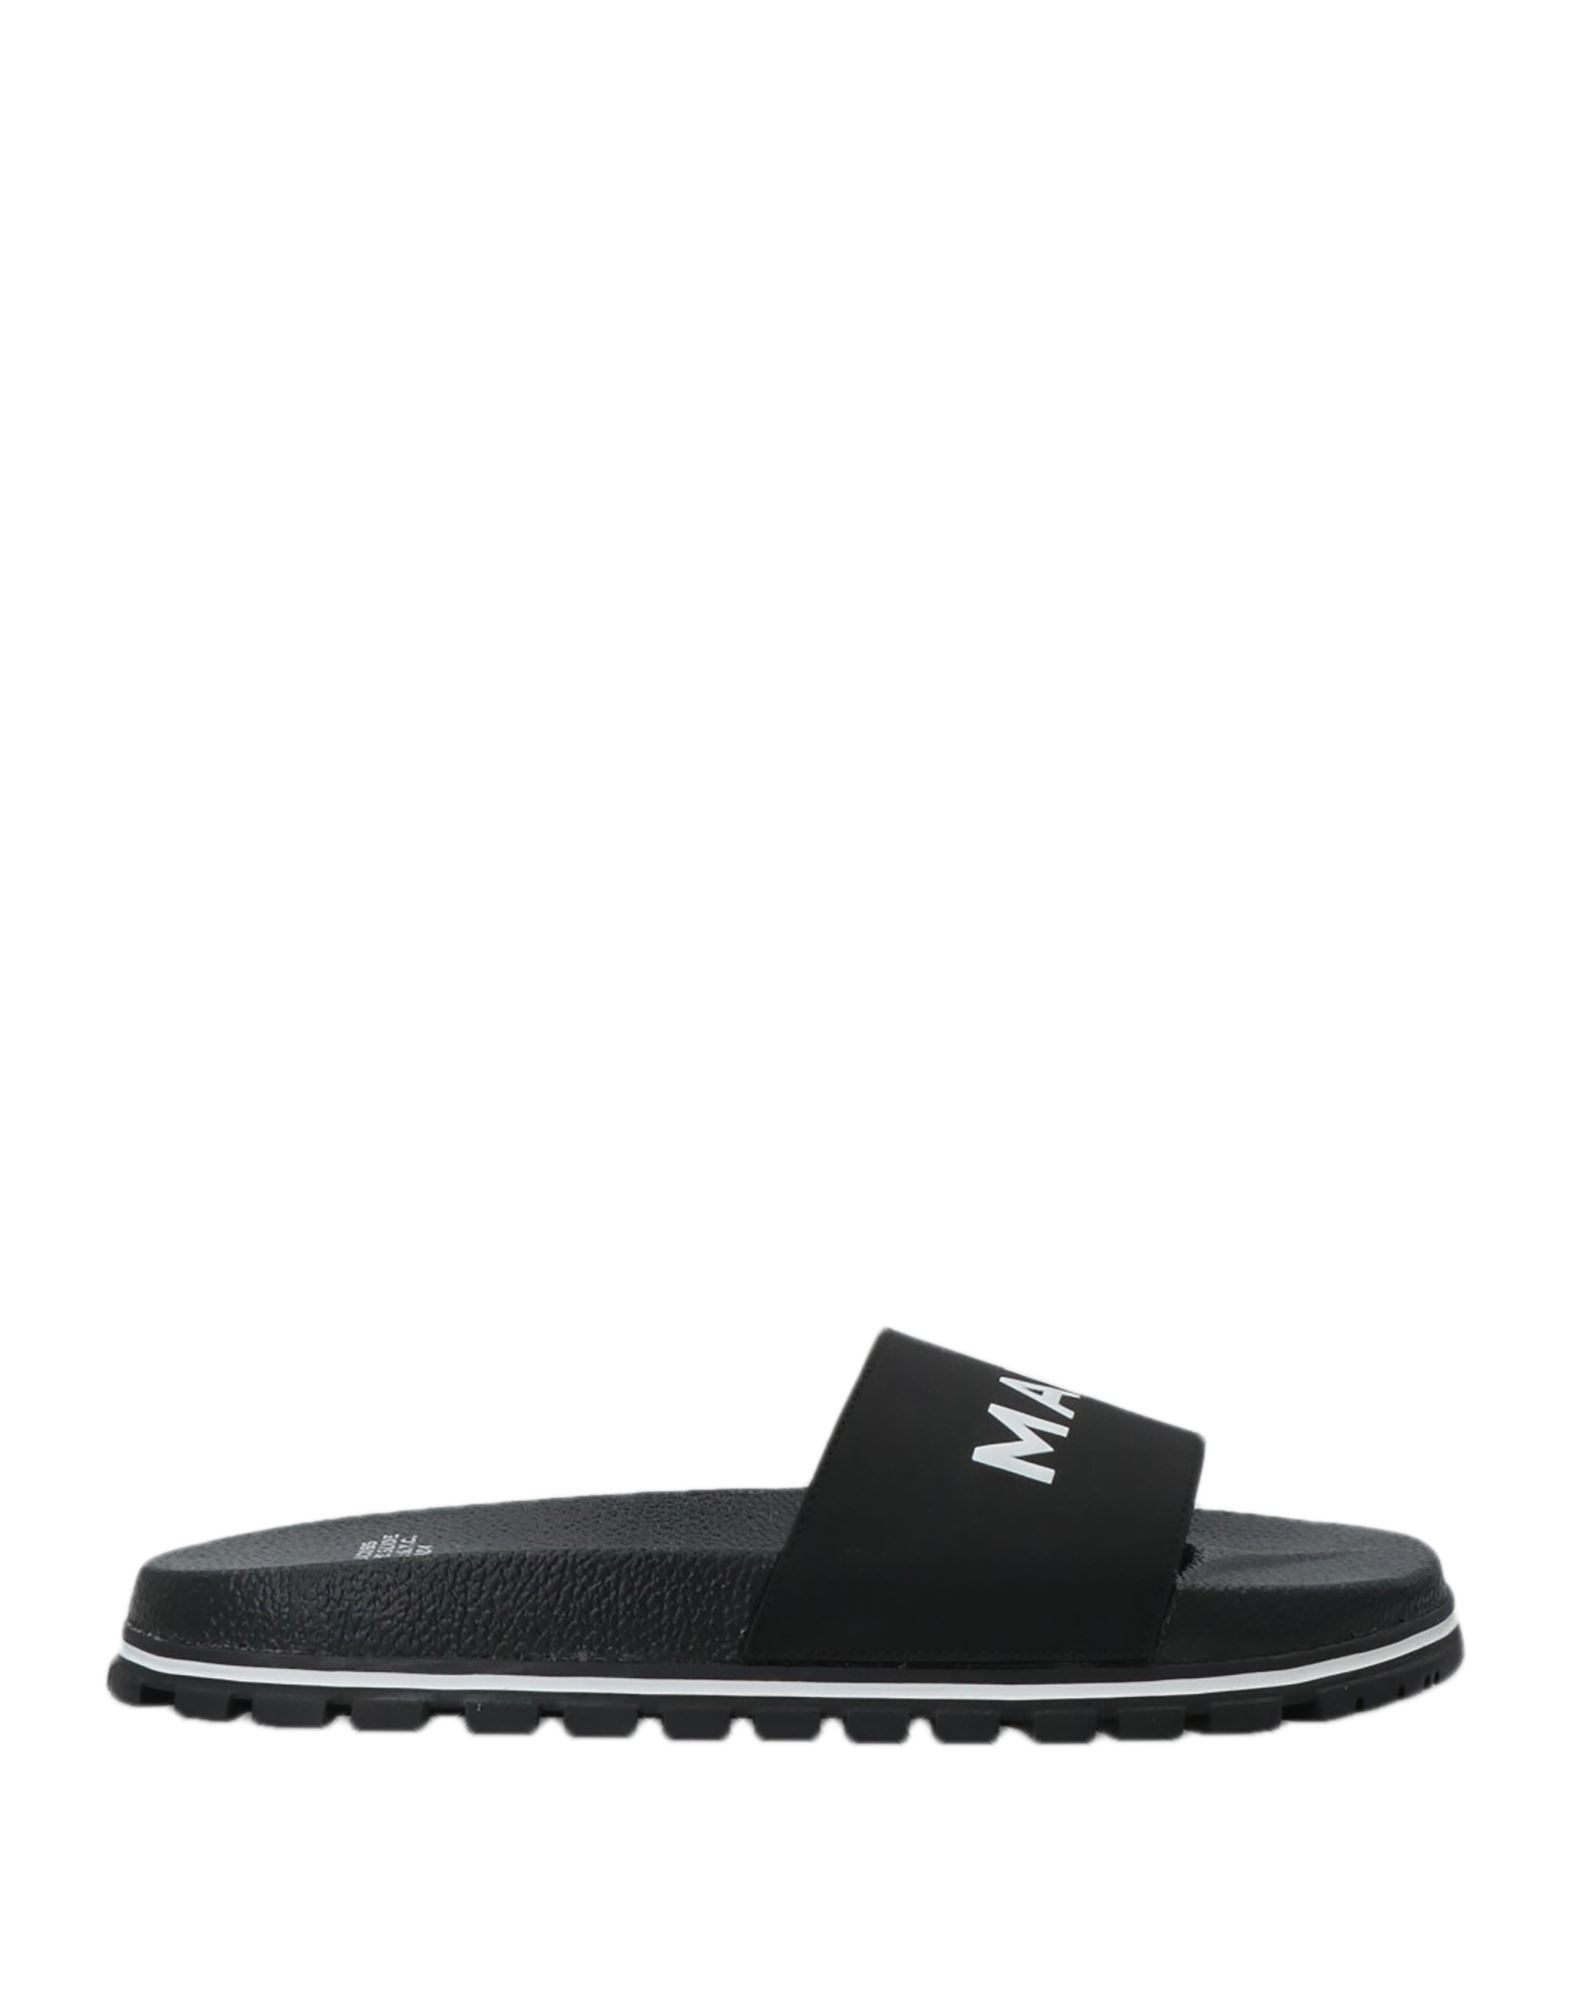 Shop Marc Jacobs Woman Sandals Black Size 5 Textile Fibers